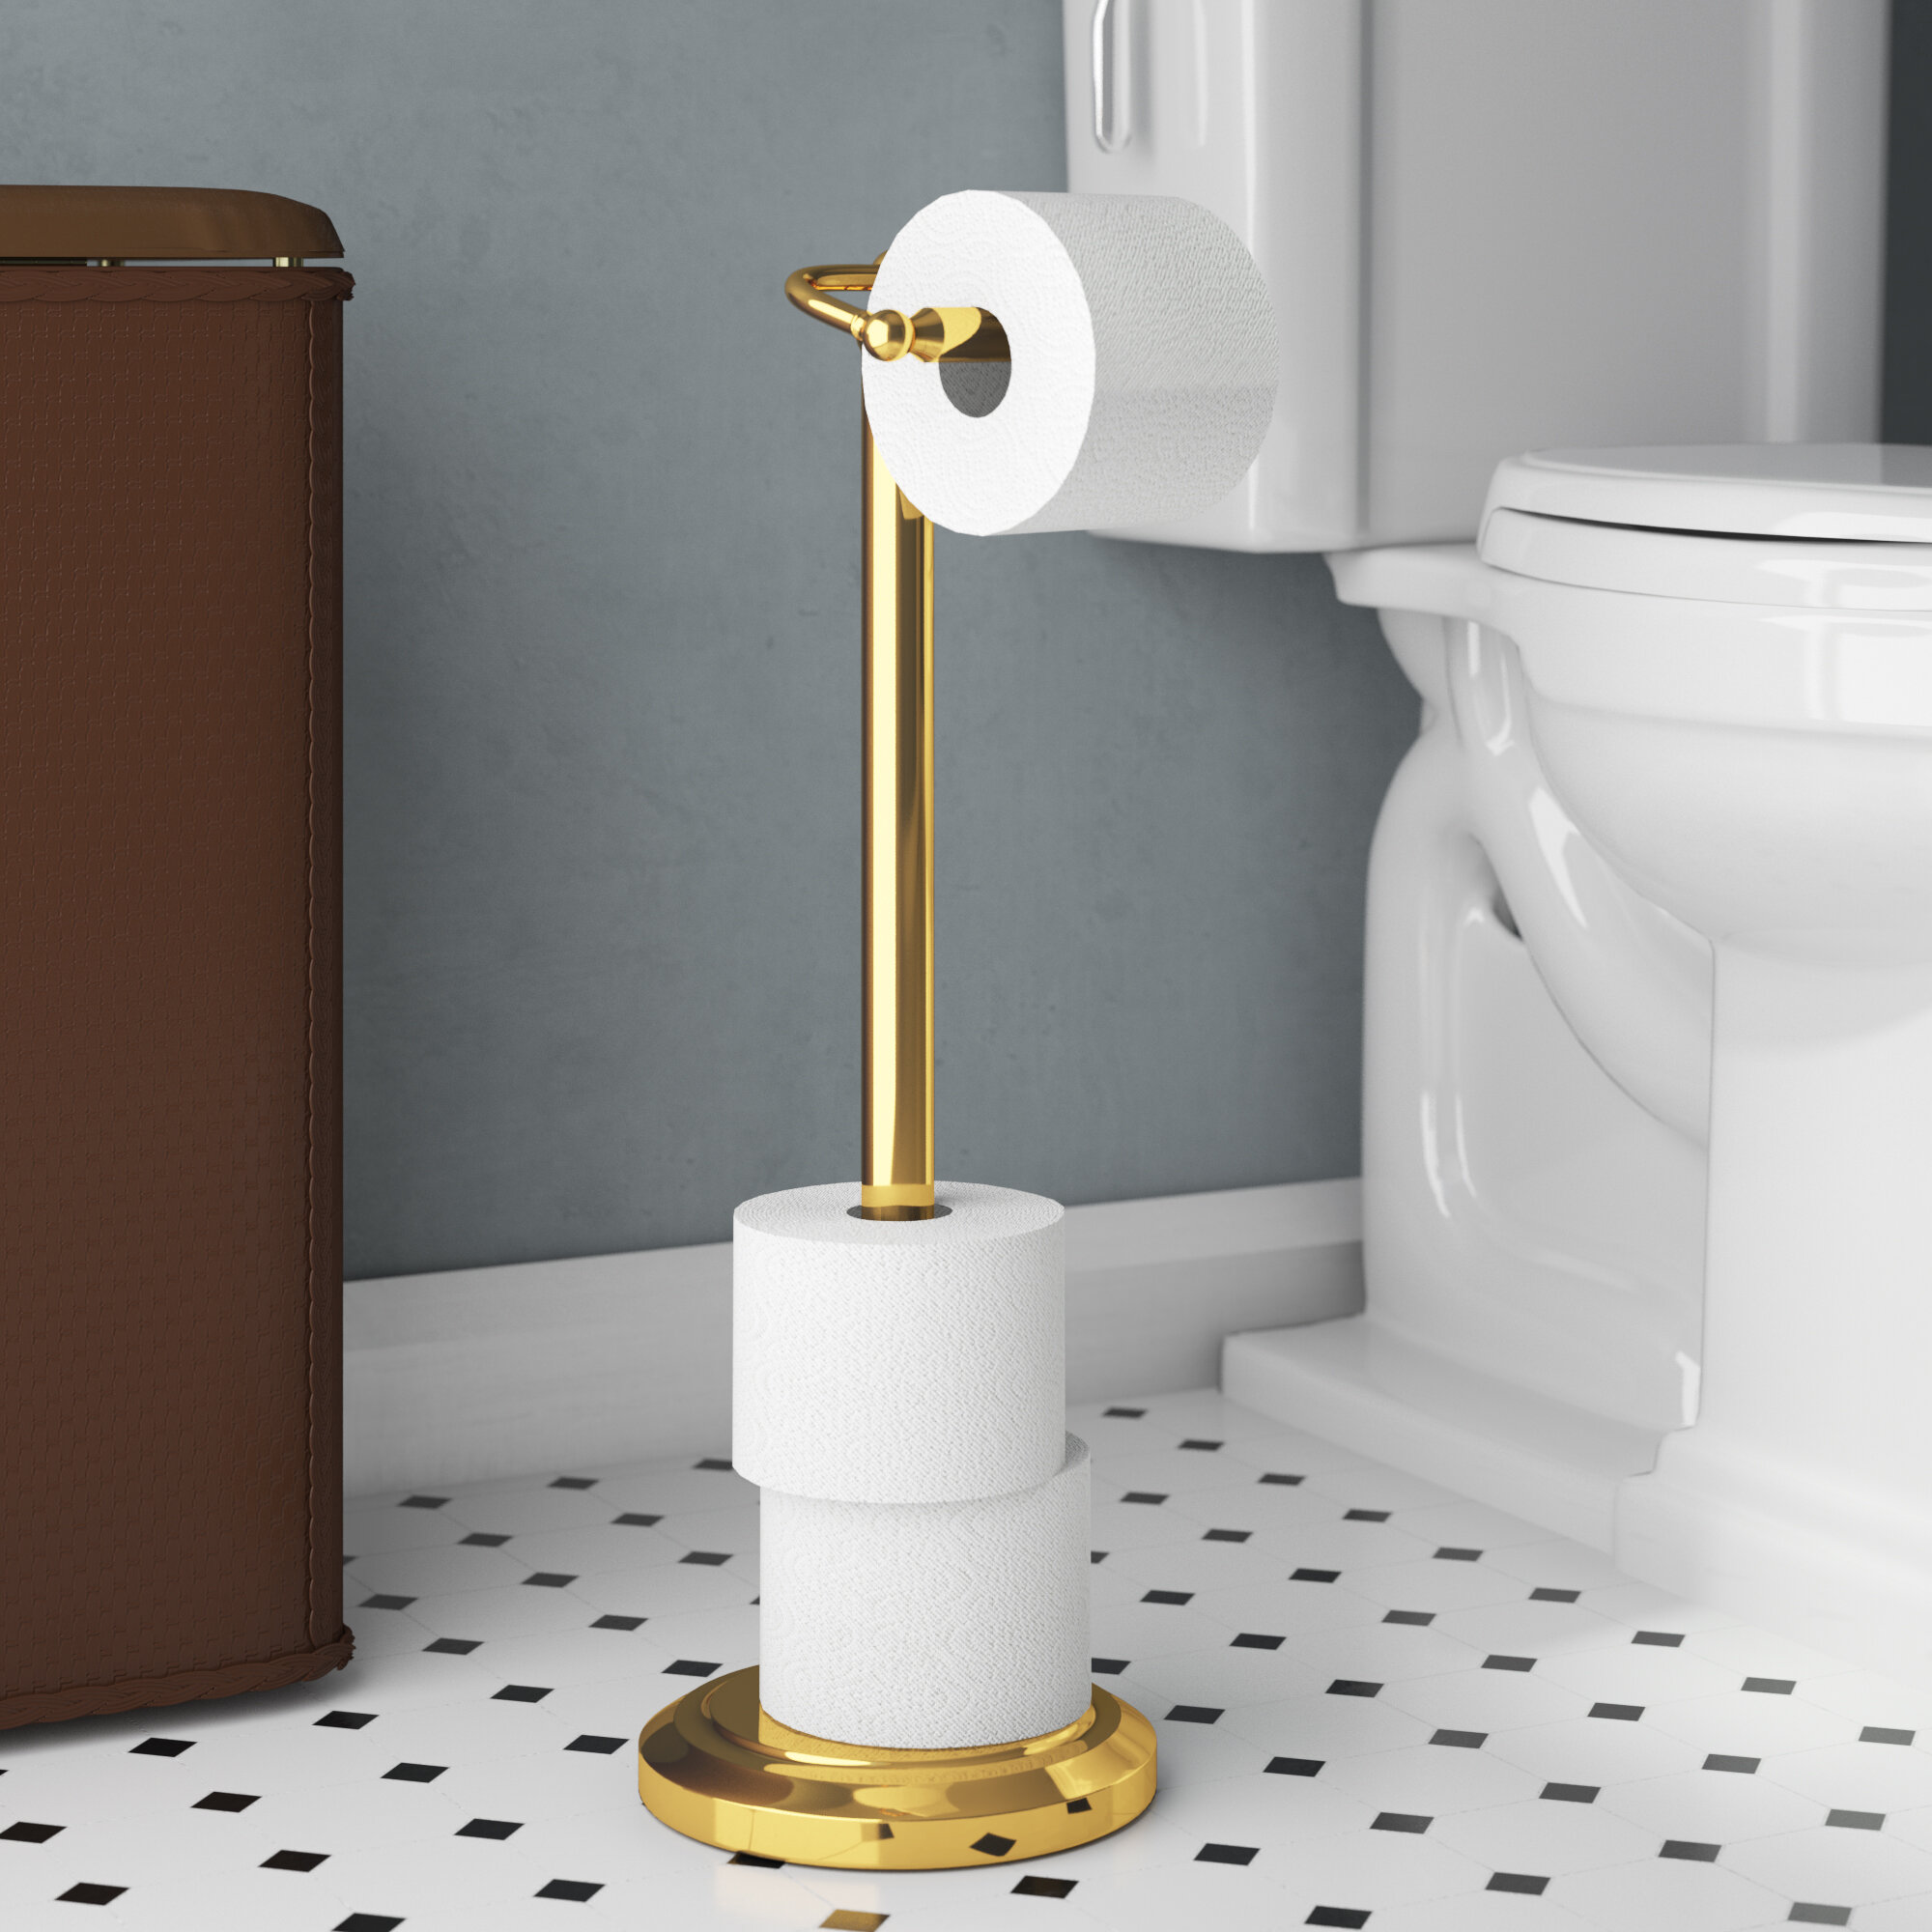 Freestanding Chrome-Plated Bathroom Toilet Paper Dispenser Tissue Roll Holder 